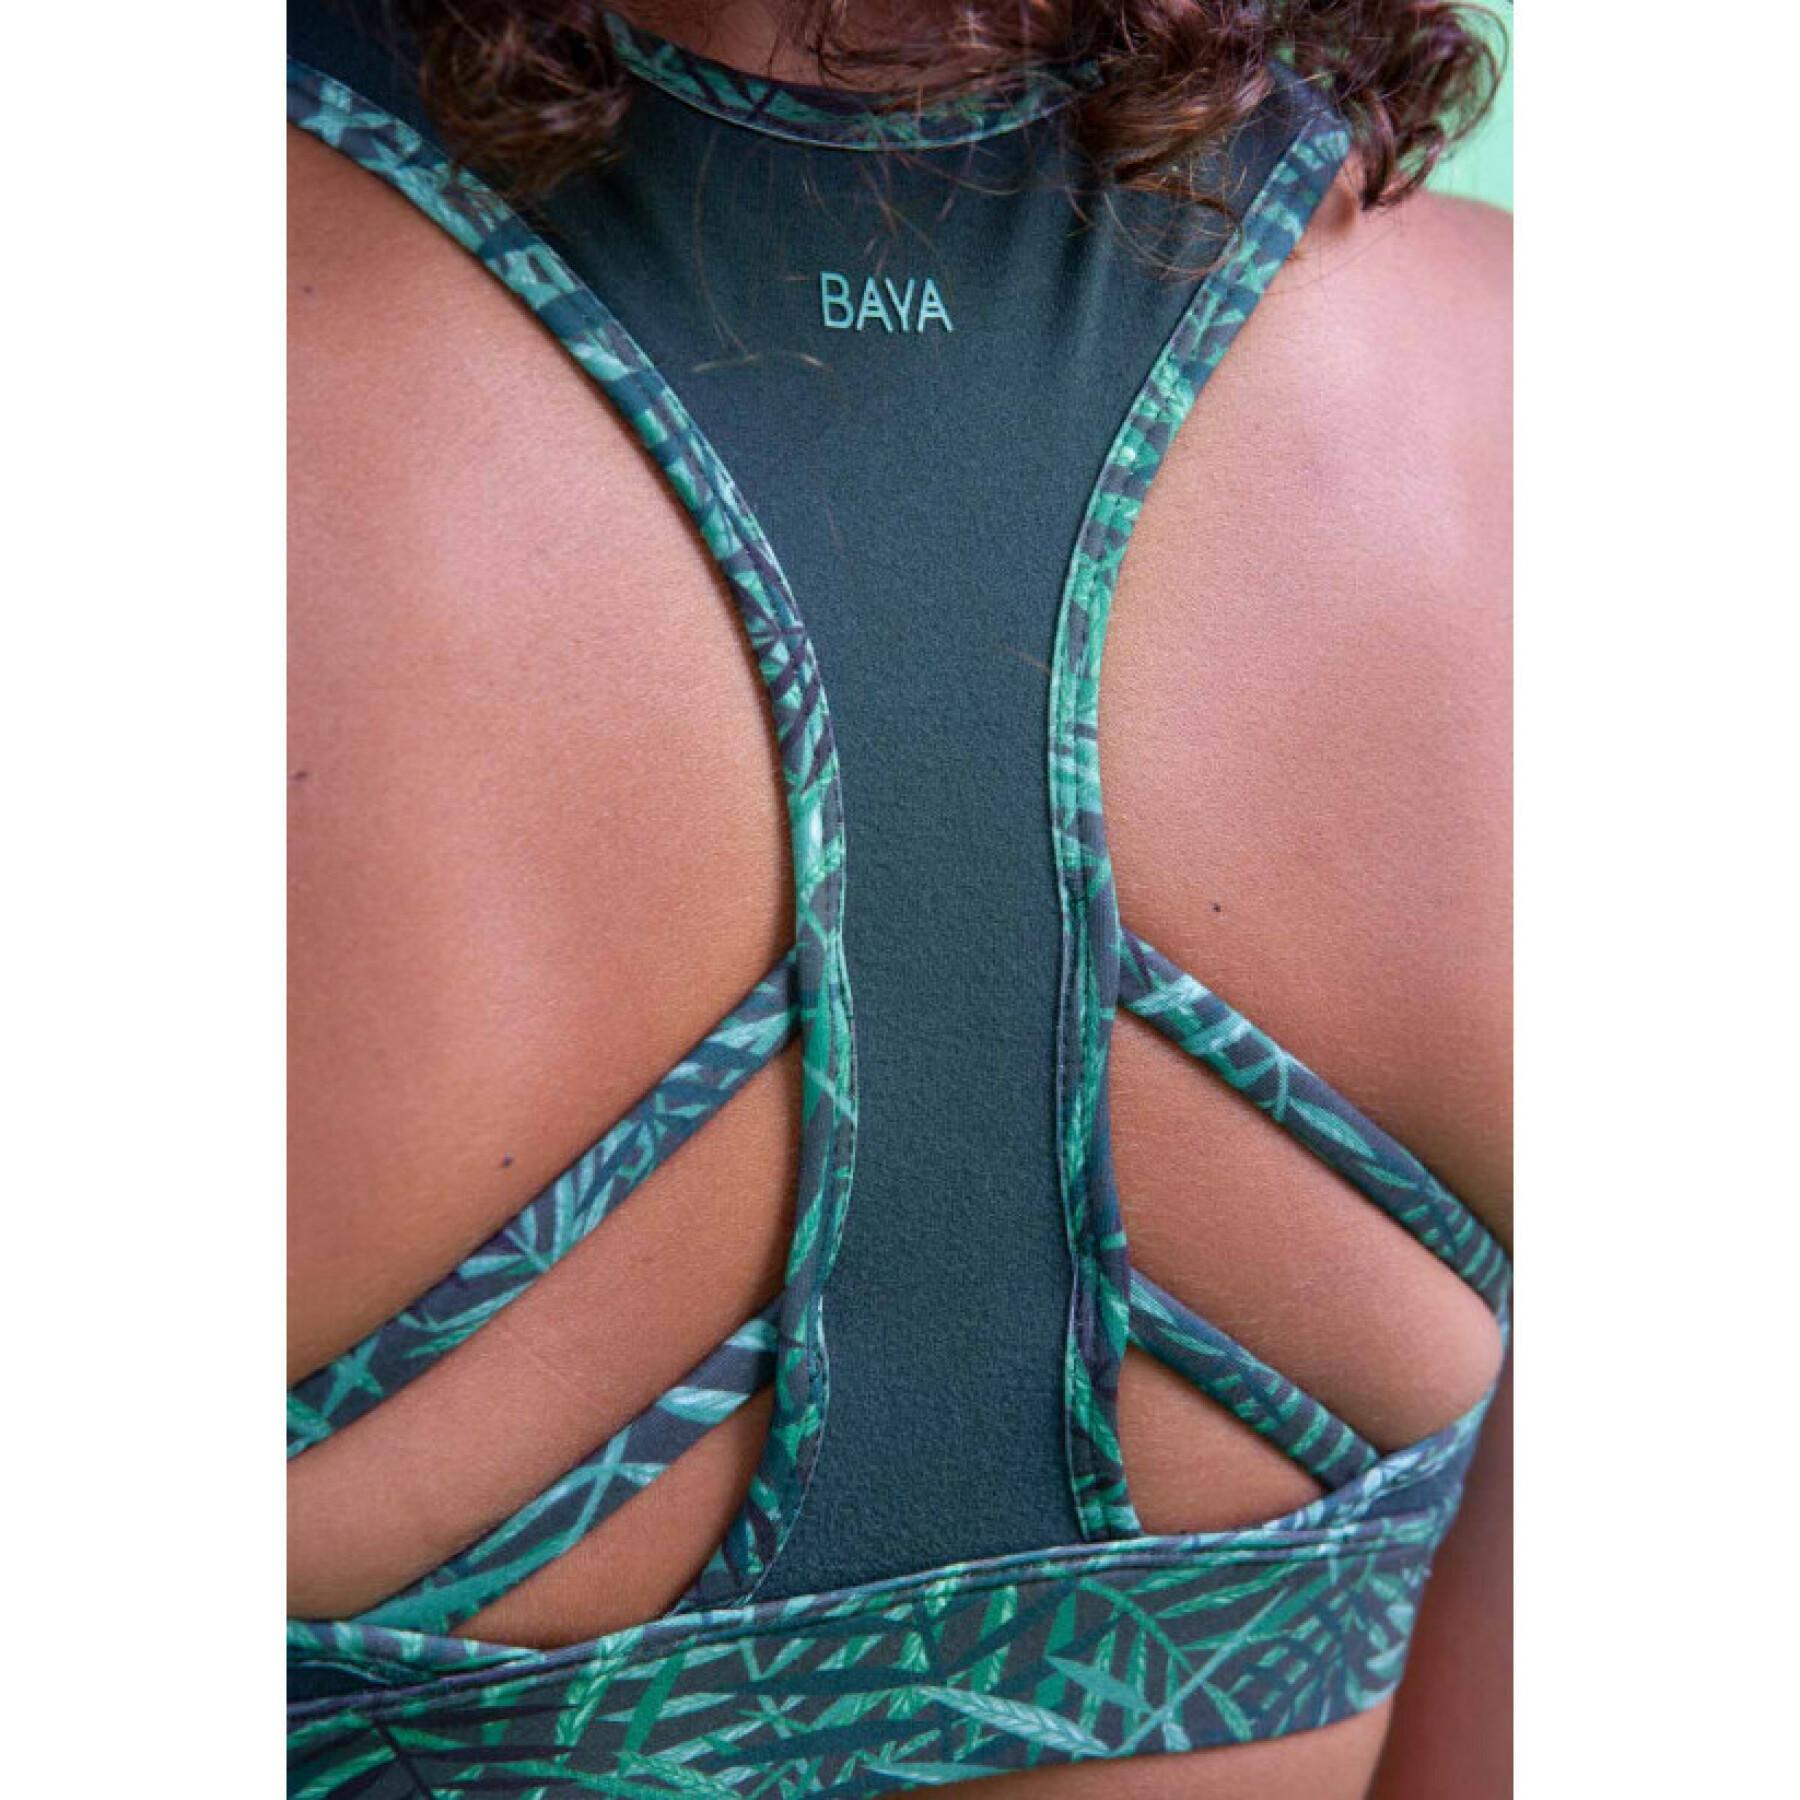 Women's bra Baya anga Jungle